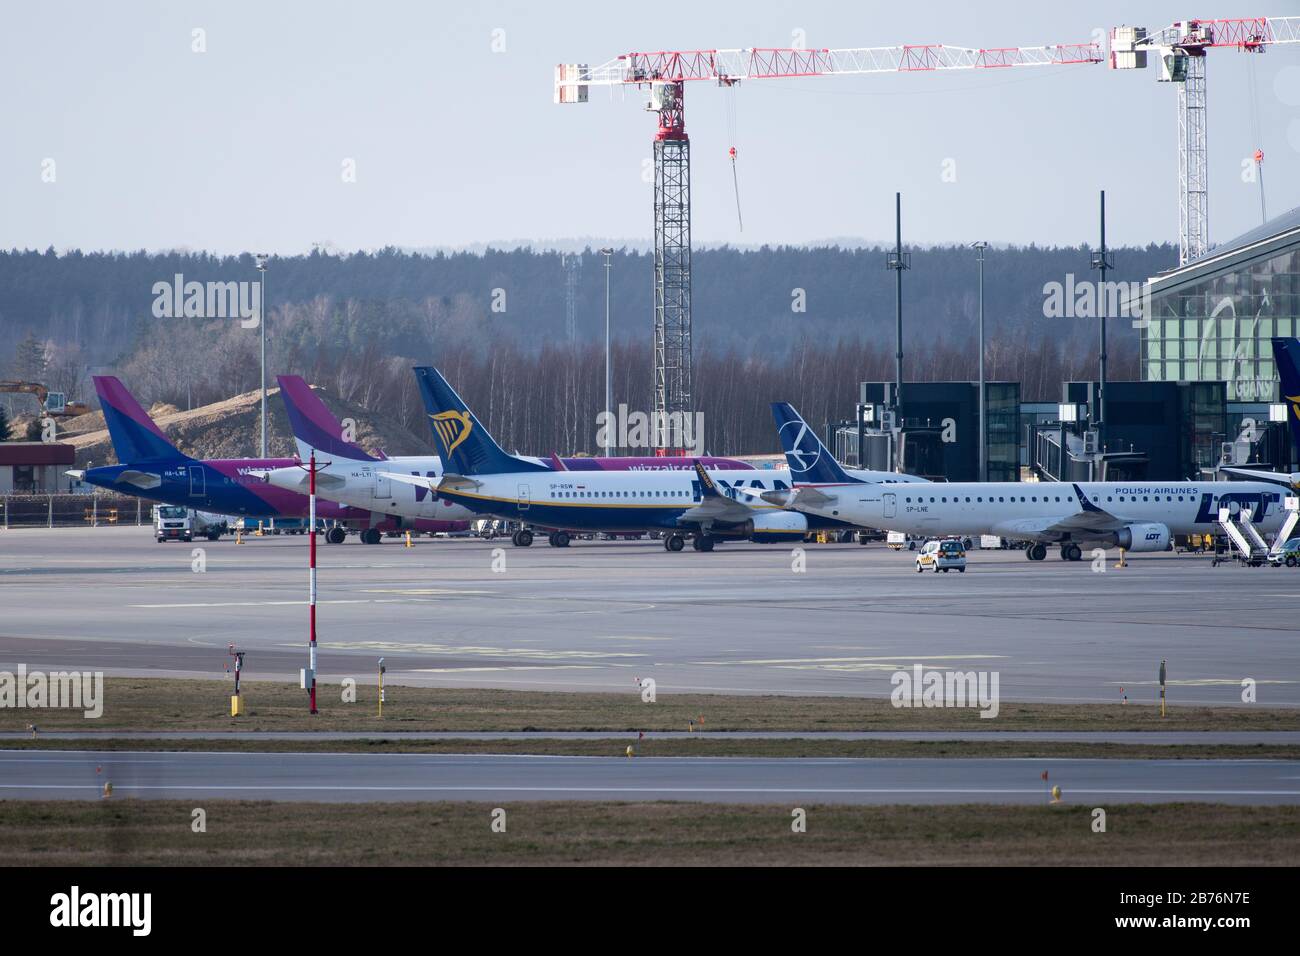 Compagnie aérienne à bas prix Ryanair Boeing 737-800 et compagnie aérienne à bas prix Wizz Air Airbus A320-200 à l'aéroport Lech Walesa de Gdansk, en Pologne. Mars Banque D'Images